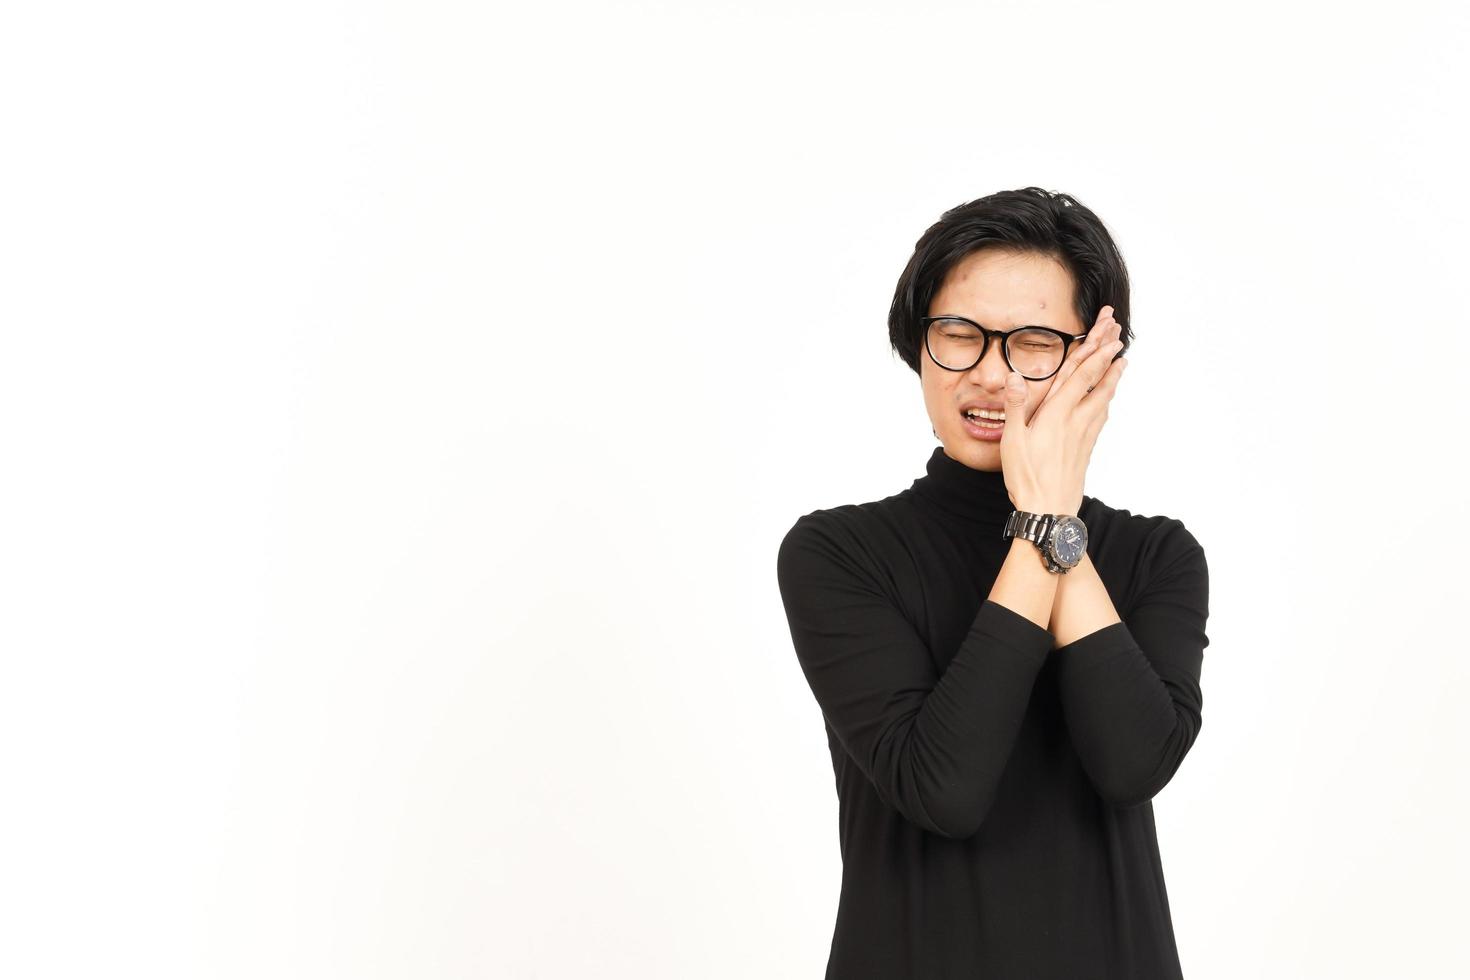 Leiden Zahnschmerzen Geste von gut aussehend asiatisch Mann isoliert auf Weiß Hintergrund foto